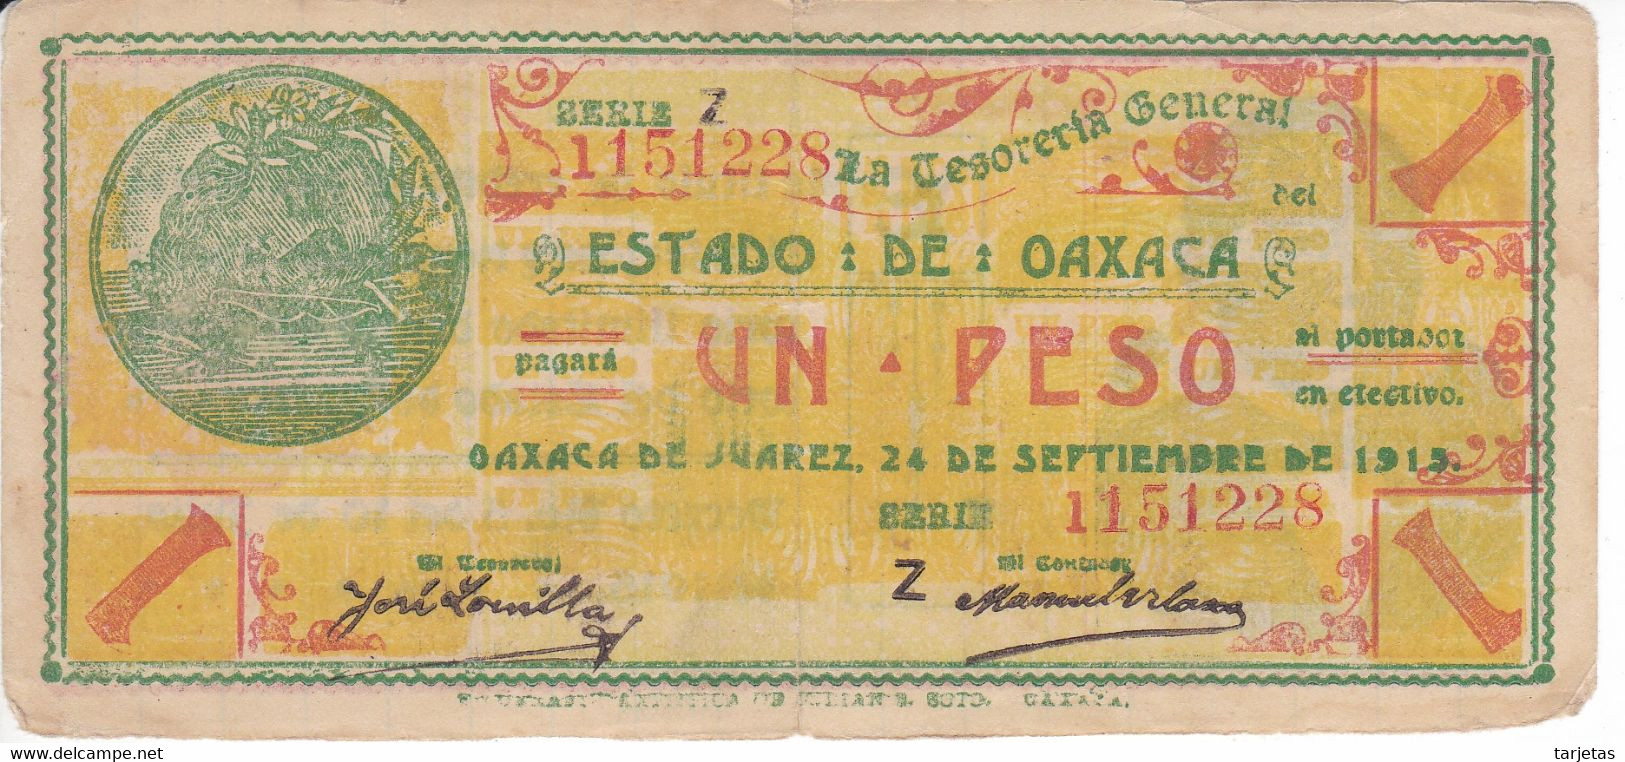 BILLETE DE MEXICO DE 1 PESO DEL ESTADO DE OAXACA DEL 24 DE SEPTIEMBRE DE 1915   (BANKNOTE) RARO - Mexico